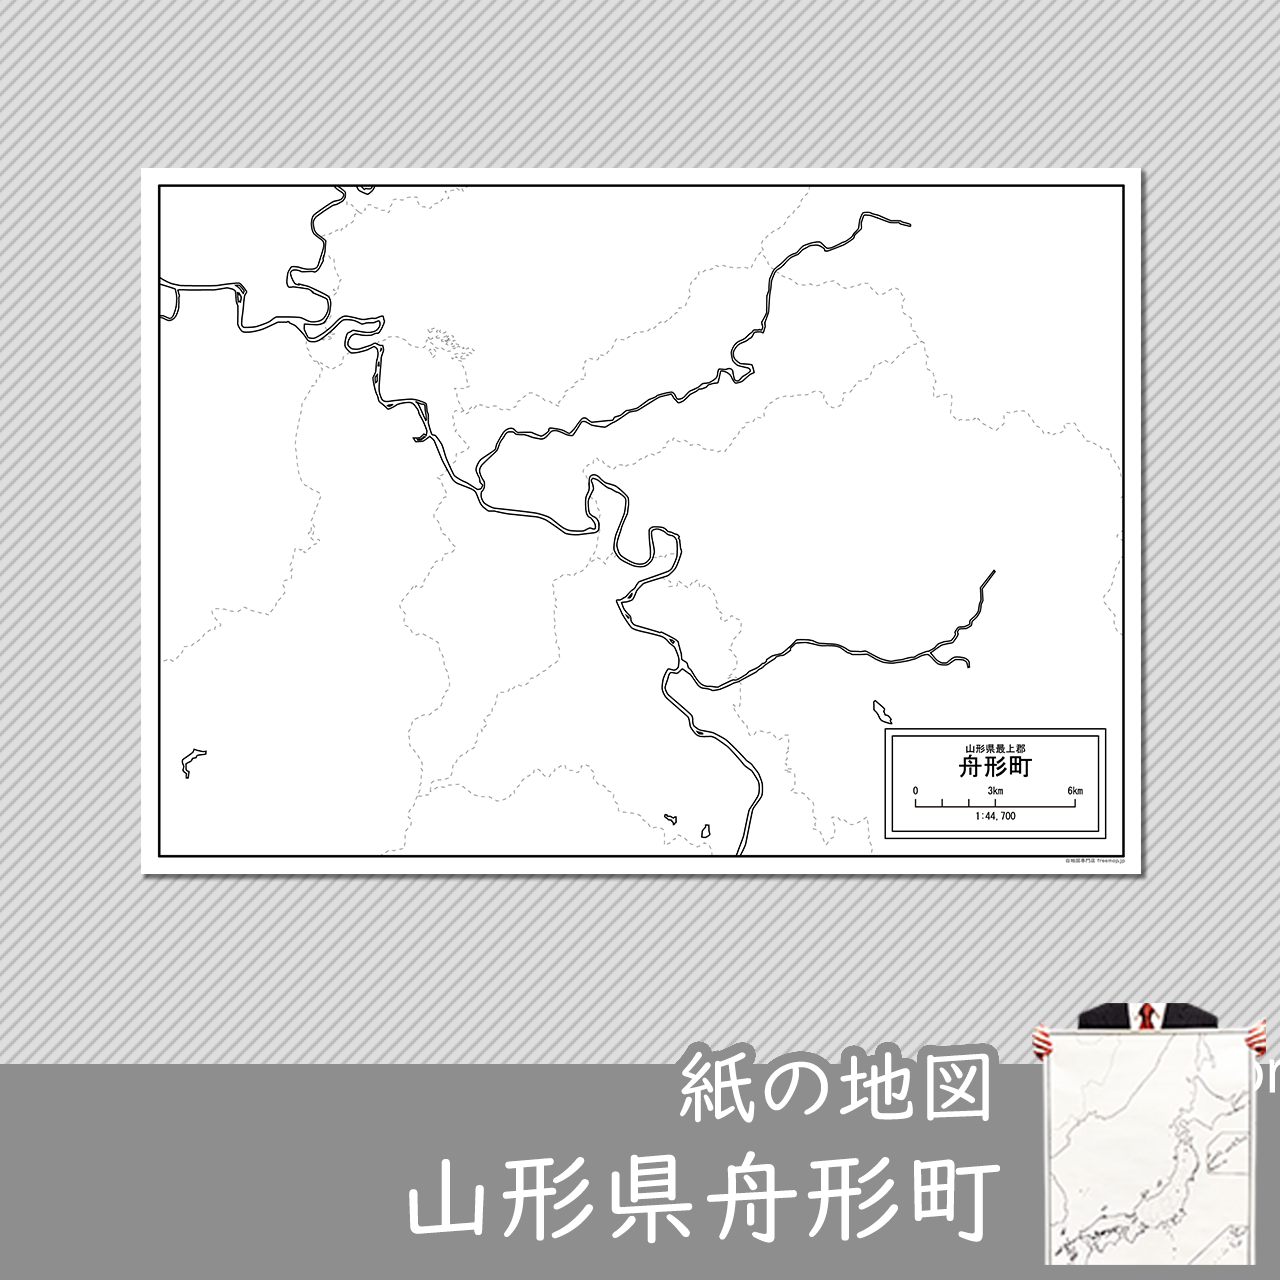 舟形町の紙の白地図